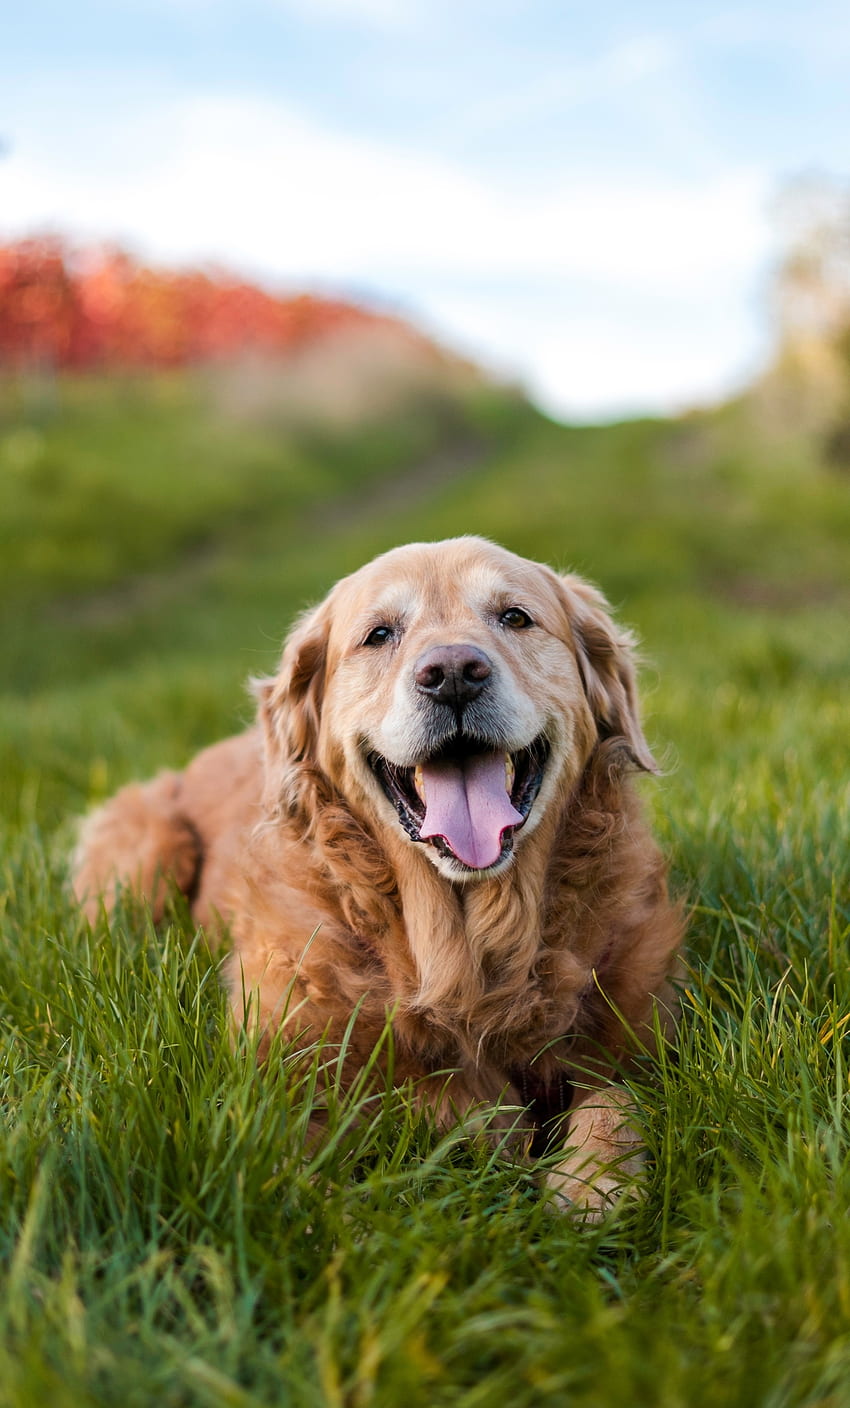 Những chú chó Golden Retriever luôn được yêu mến bởi sự dễ thương và tình cảm của chúng. Nếu bạn muốn có một nền ảnh điện thoại hoặc ảnh nền chó Golden Retriever dễ thương, đừng ngần ngại ghé thăm trang web của chúng tôi. Bạn sẽ được tìm thấy những bức ảnh với chất lượng tốt và đáng yêu nhất!